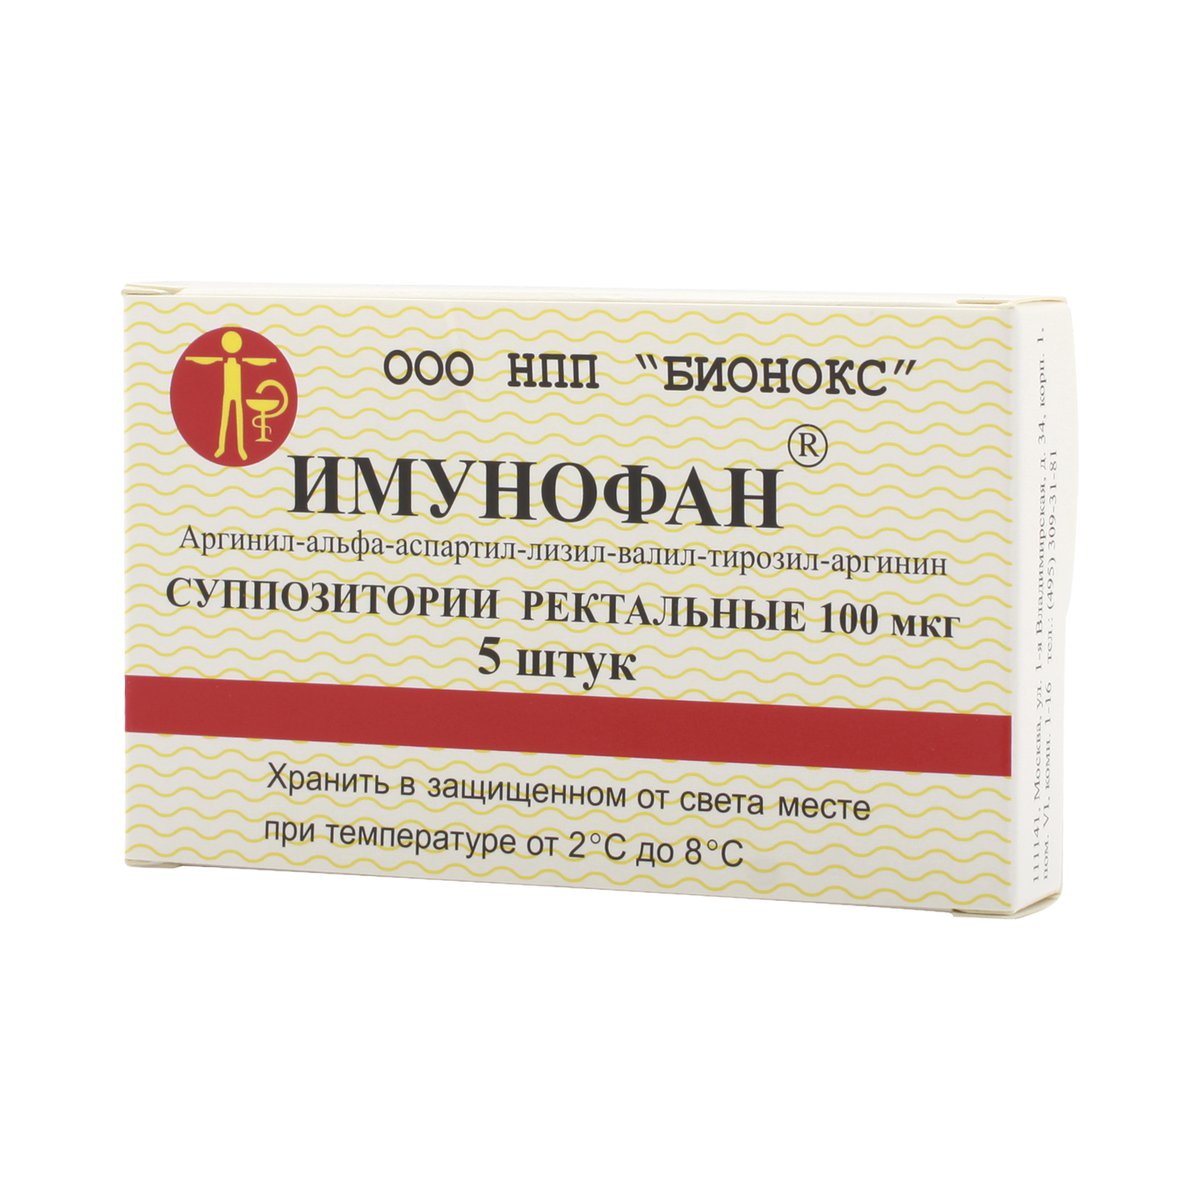 Имунофан (свечи, 5 шт, 100 мкг, ректальные) - цена,  онлайн в .